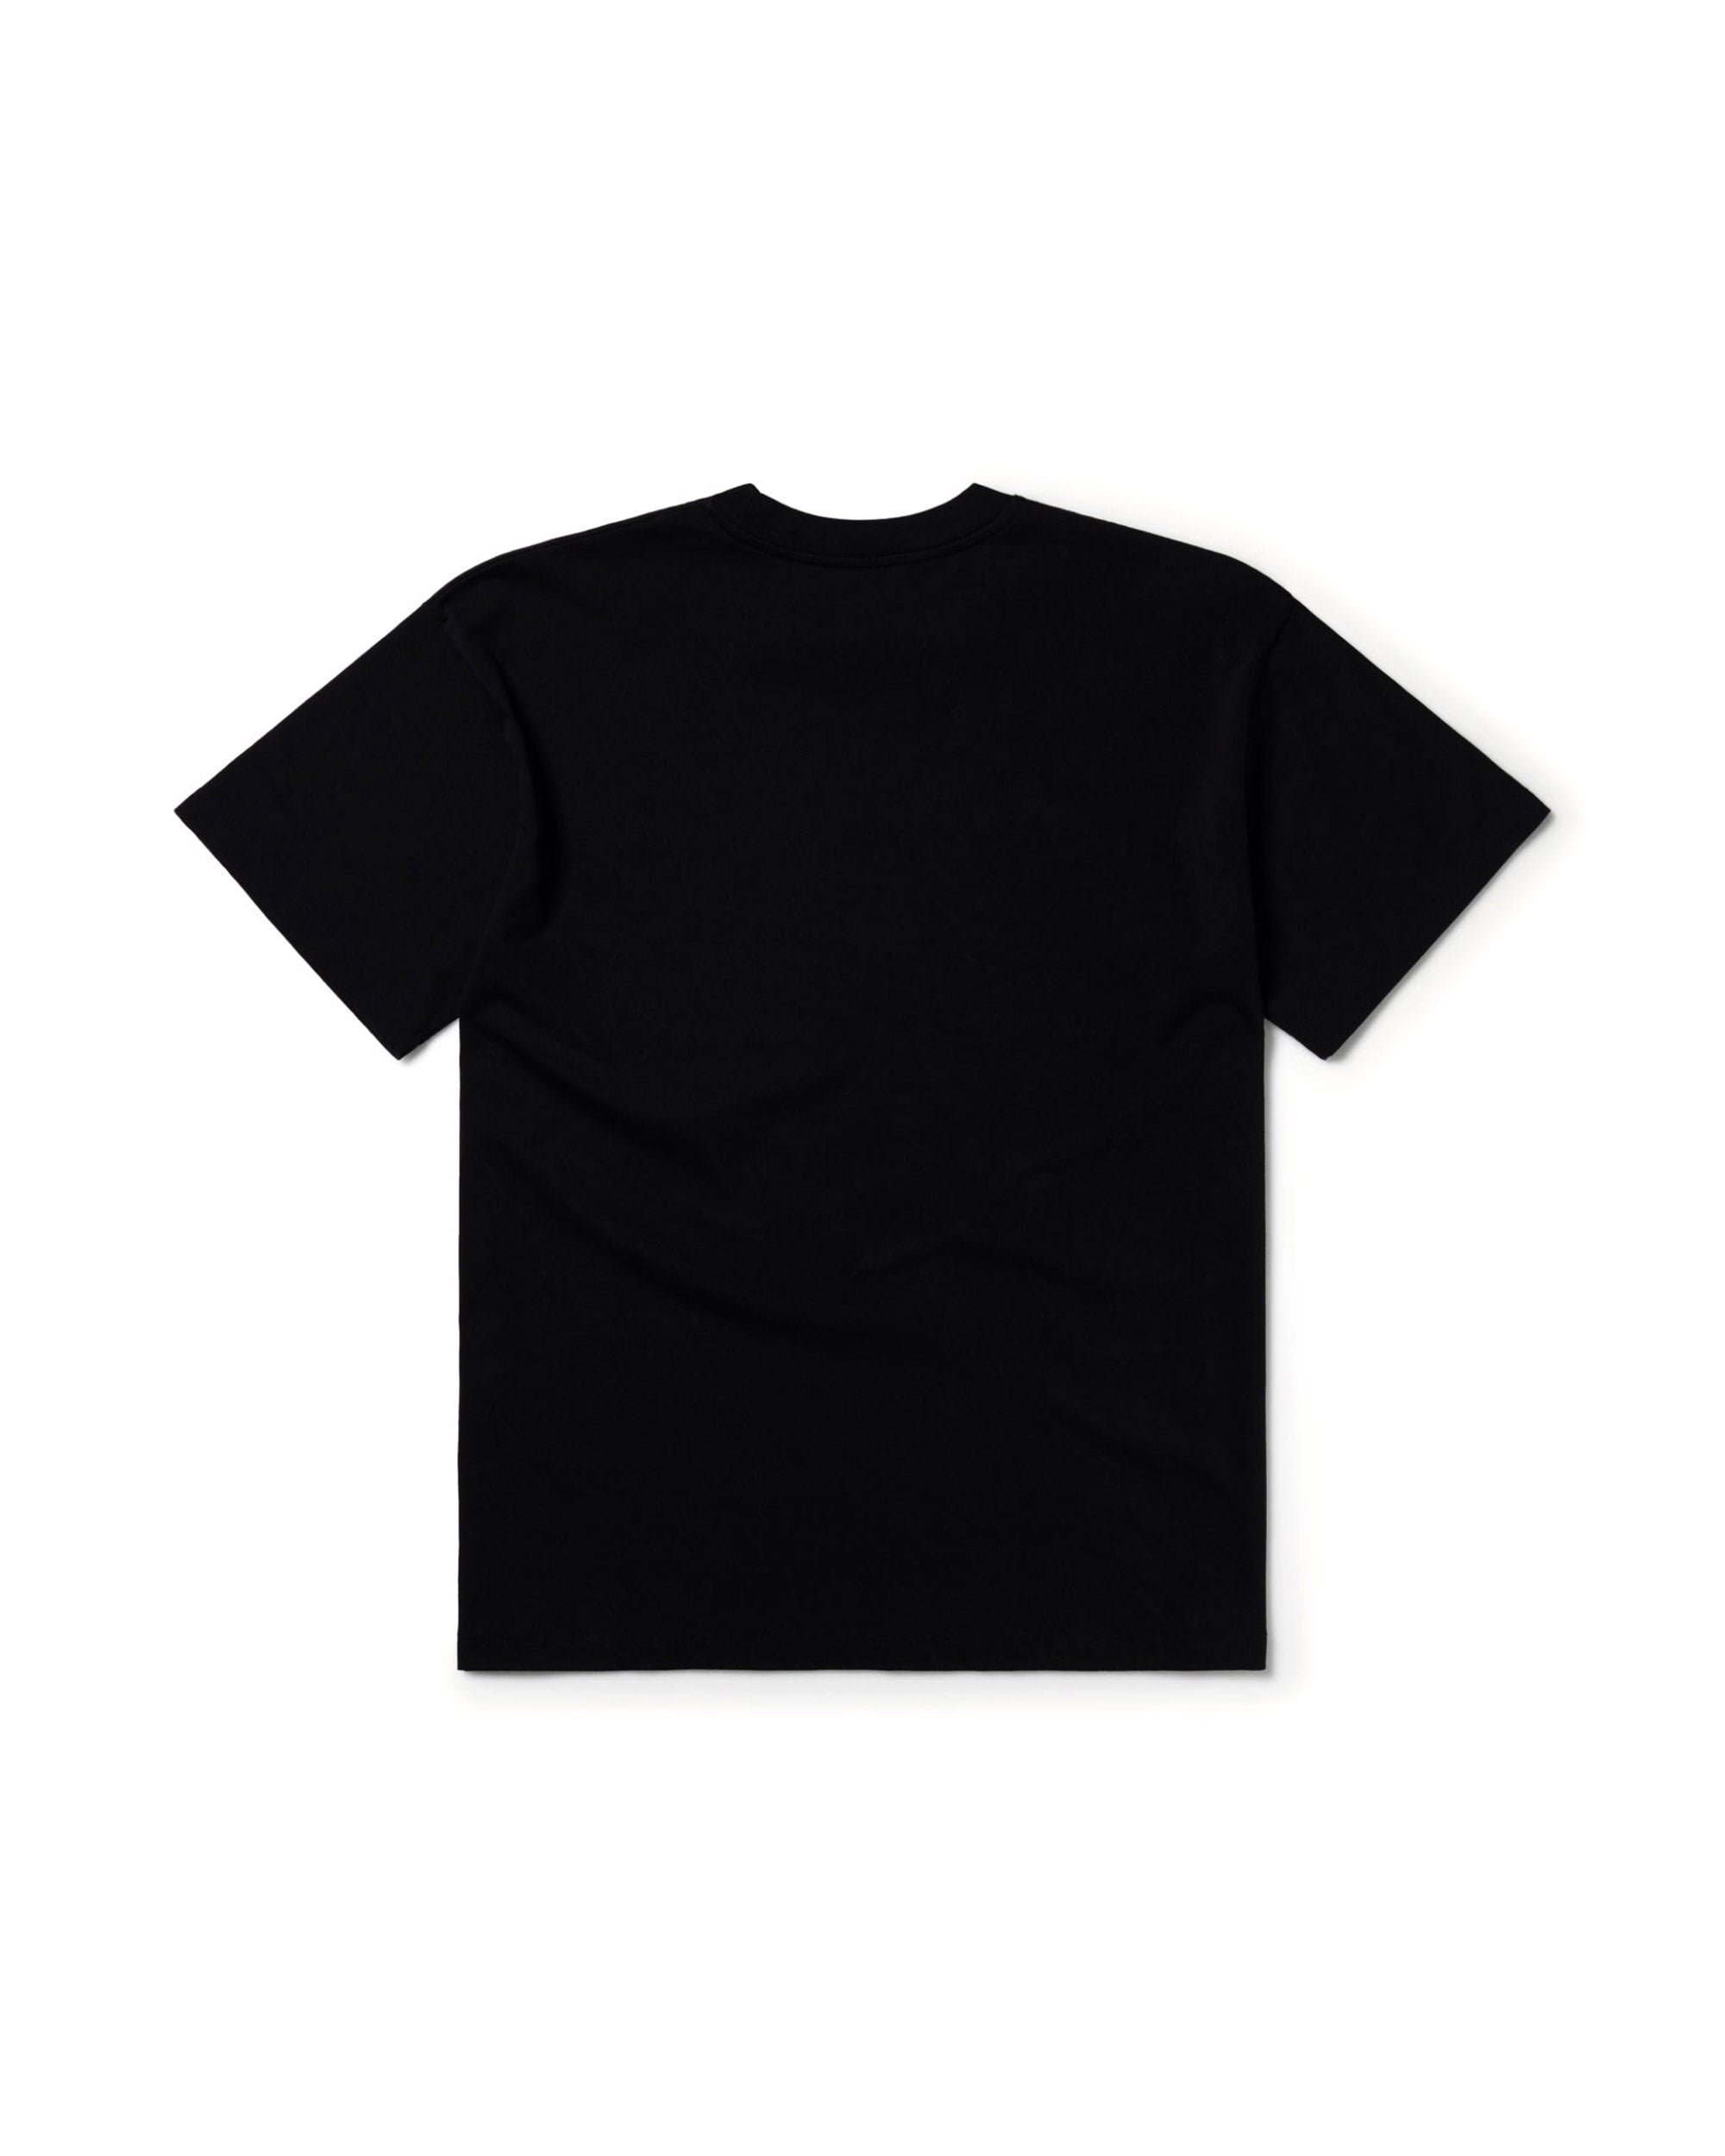 Temple T-Shirt - Black